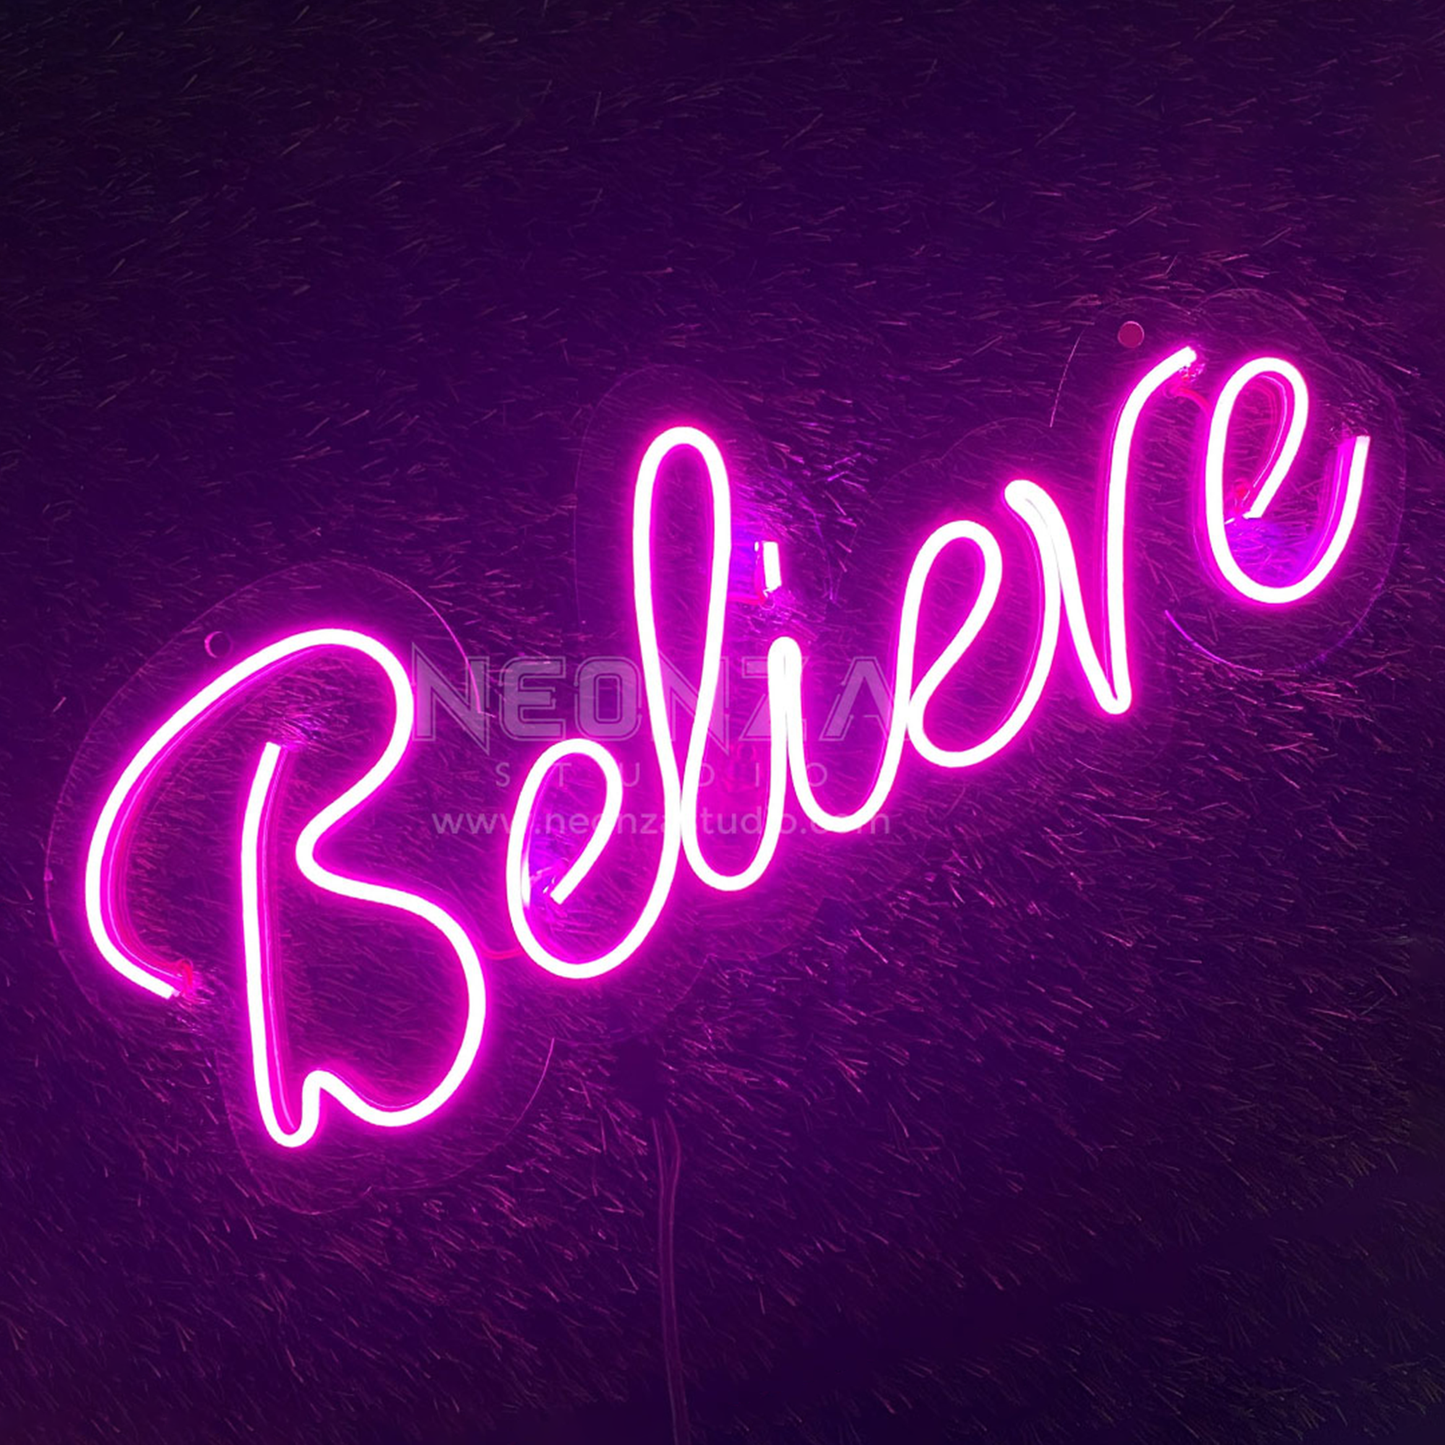 believe-neon-sign